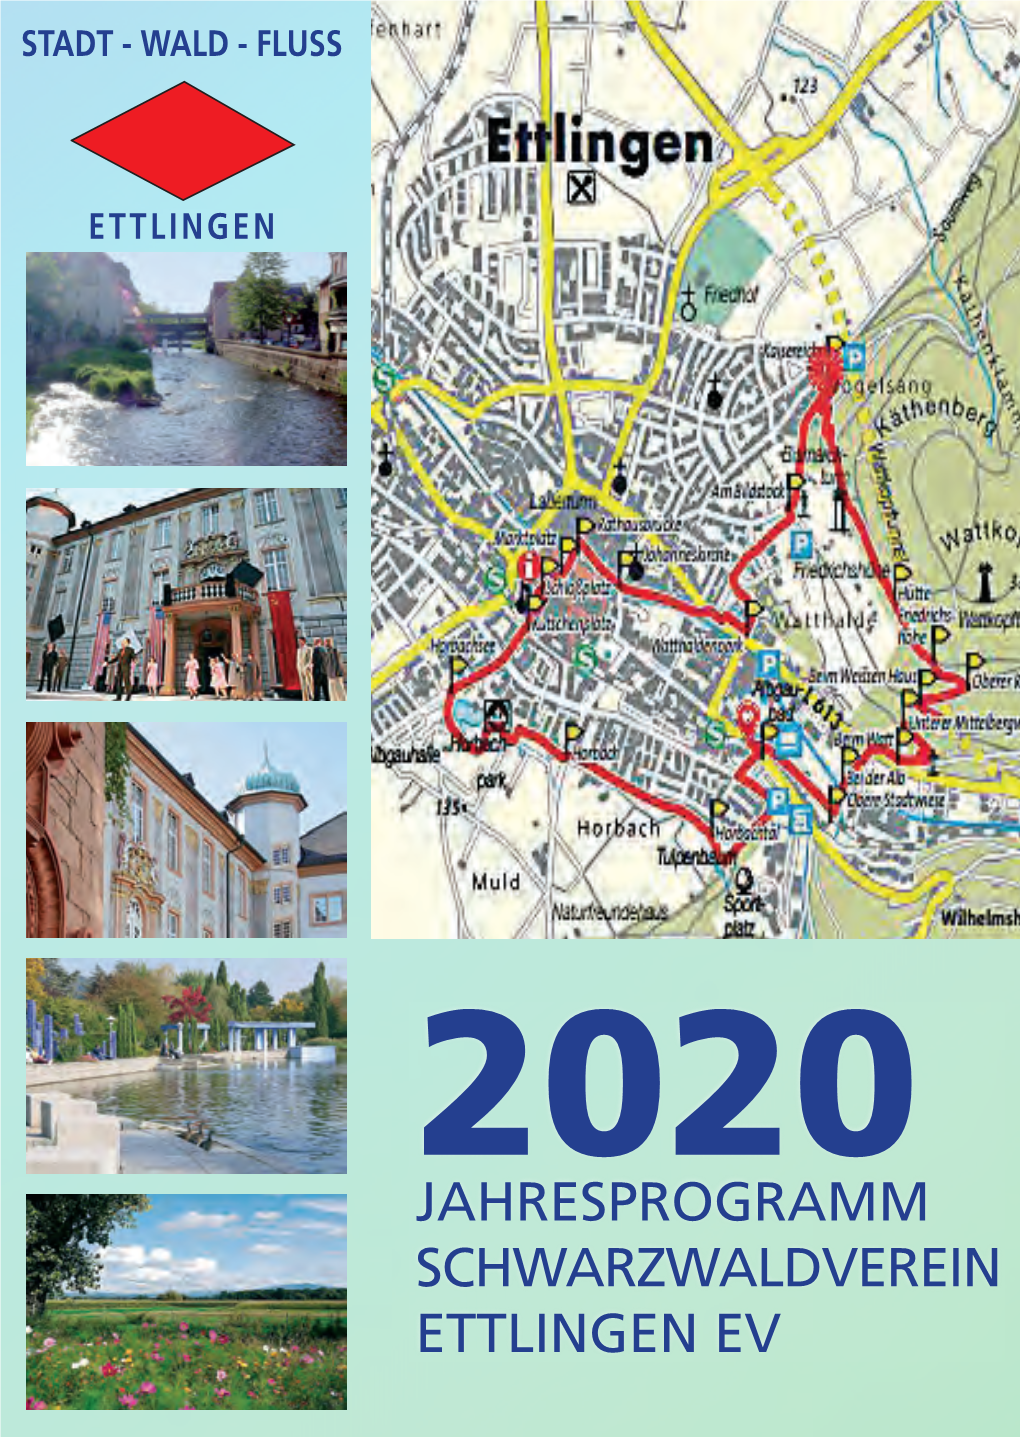 Jahresprogramm Schwarzwaldverein Ettlingen Ev